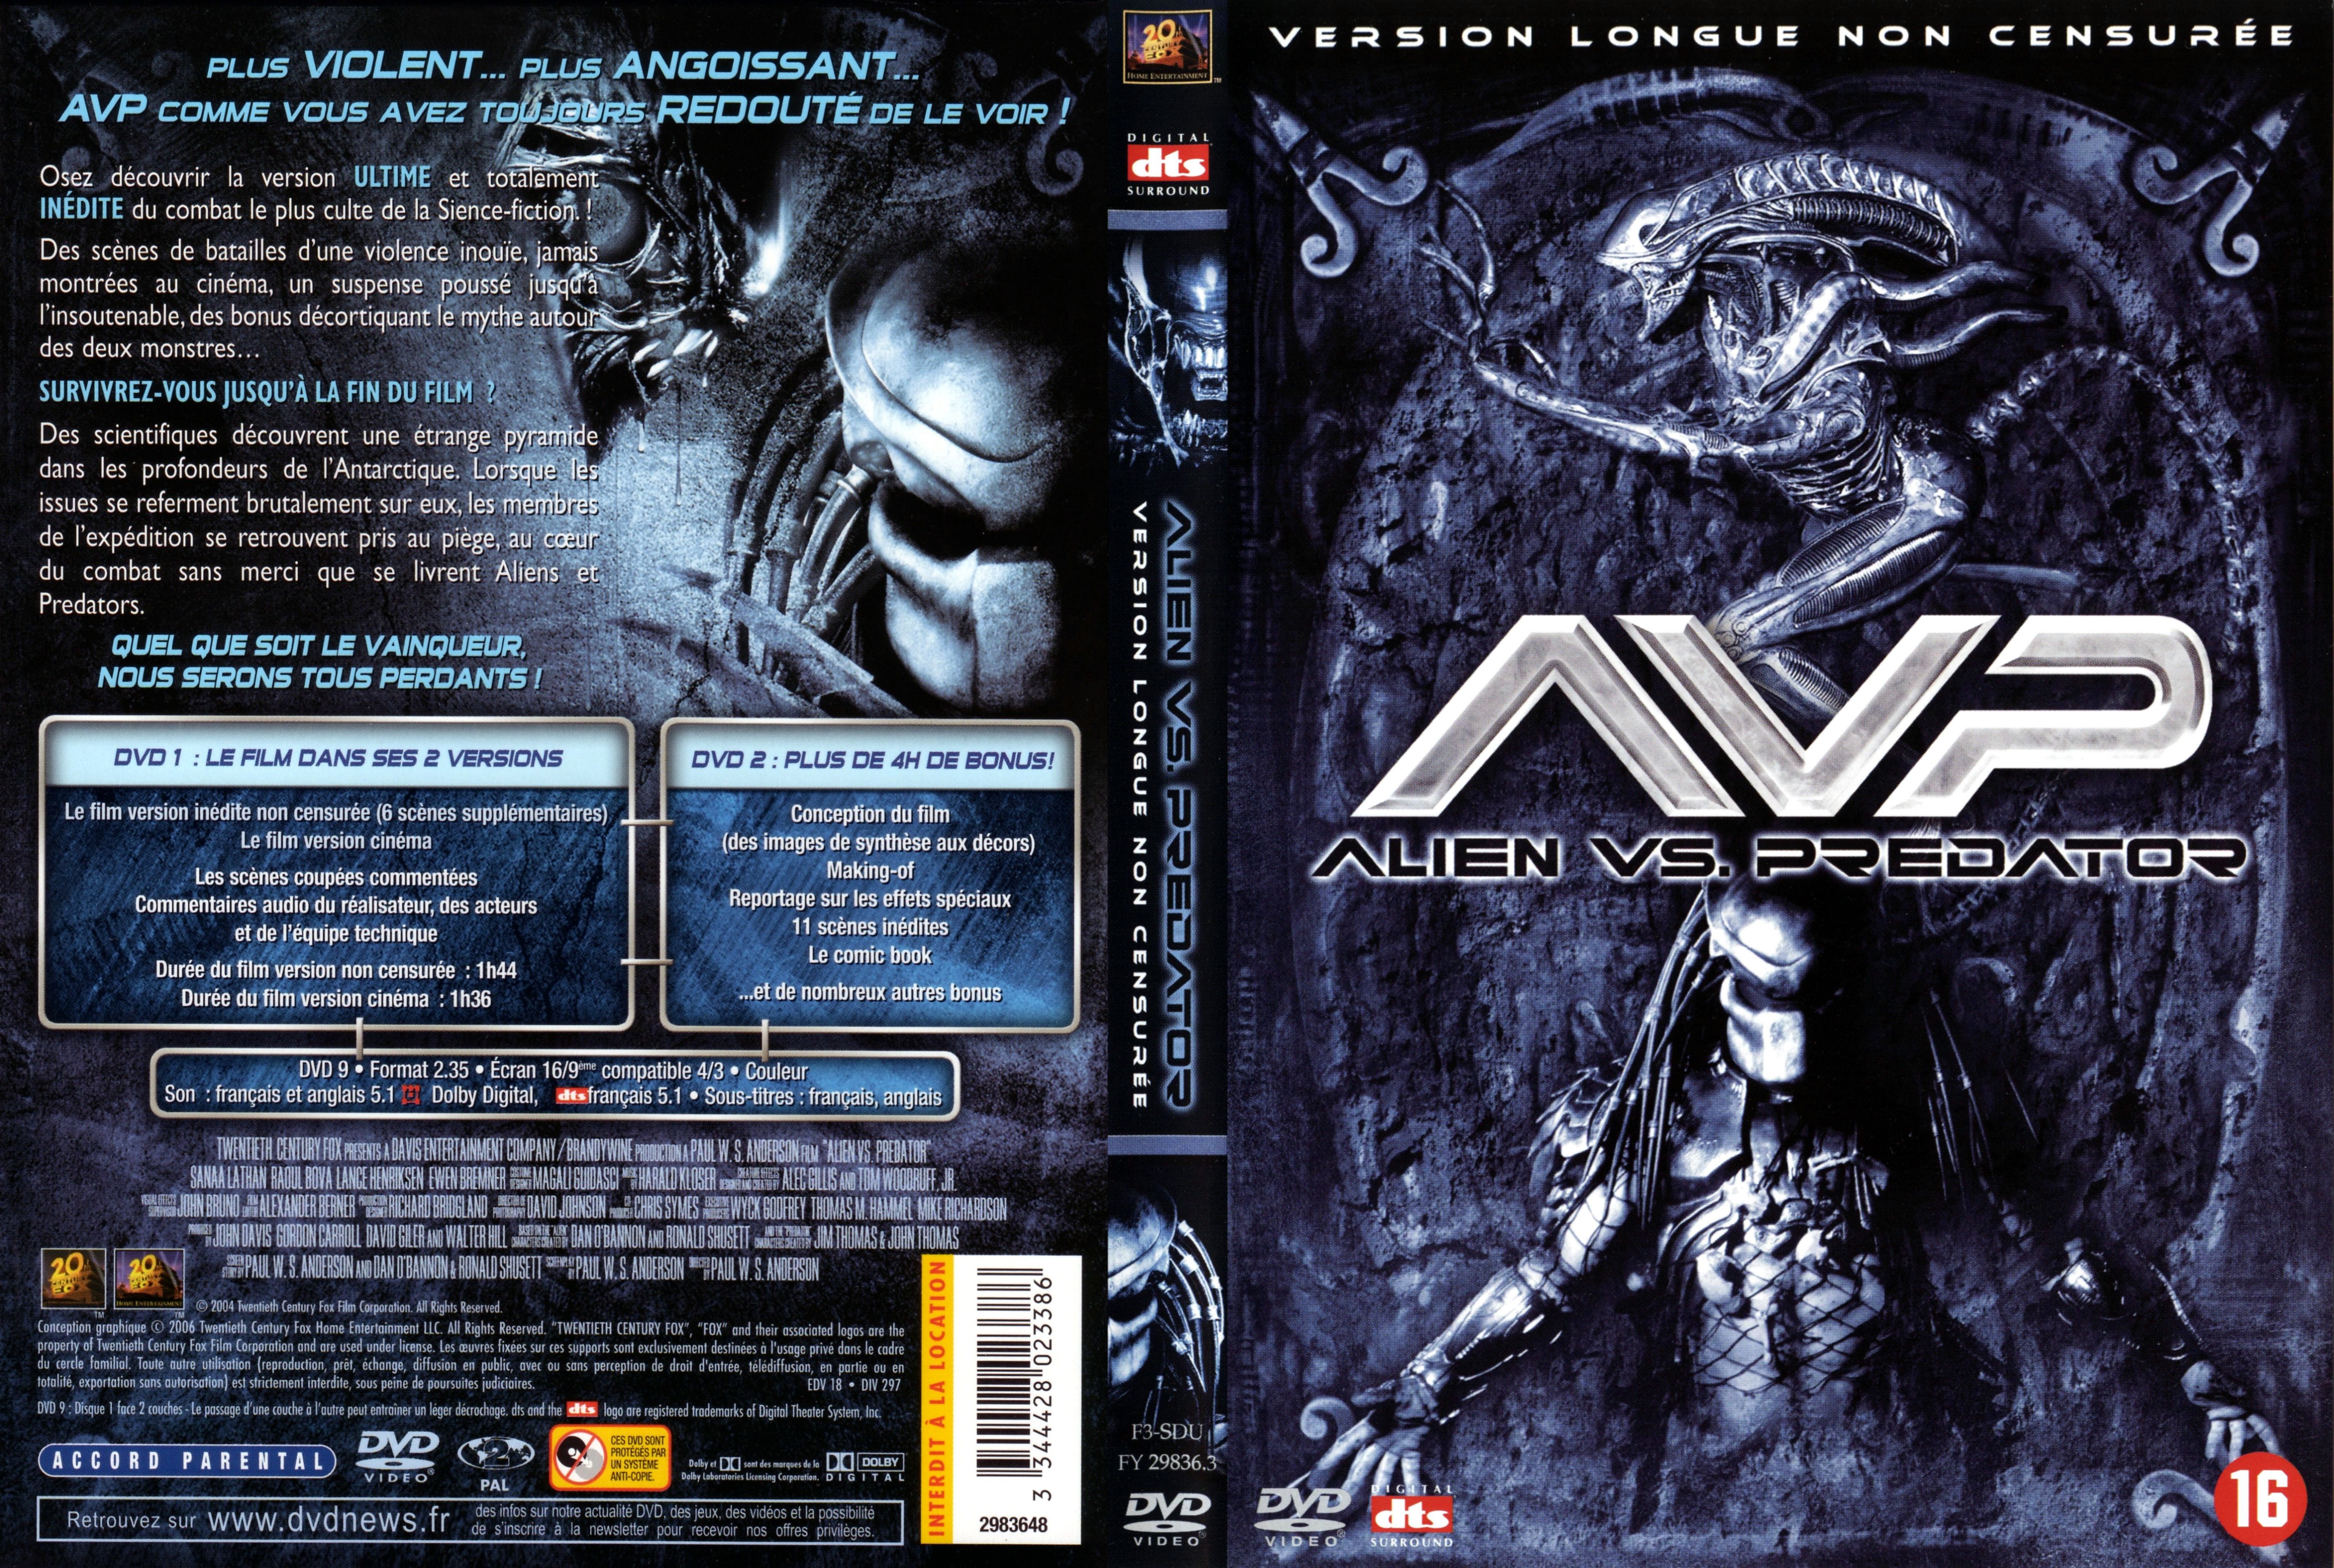 Jaquette DVD Alien vs Predator v6